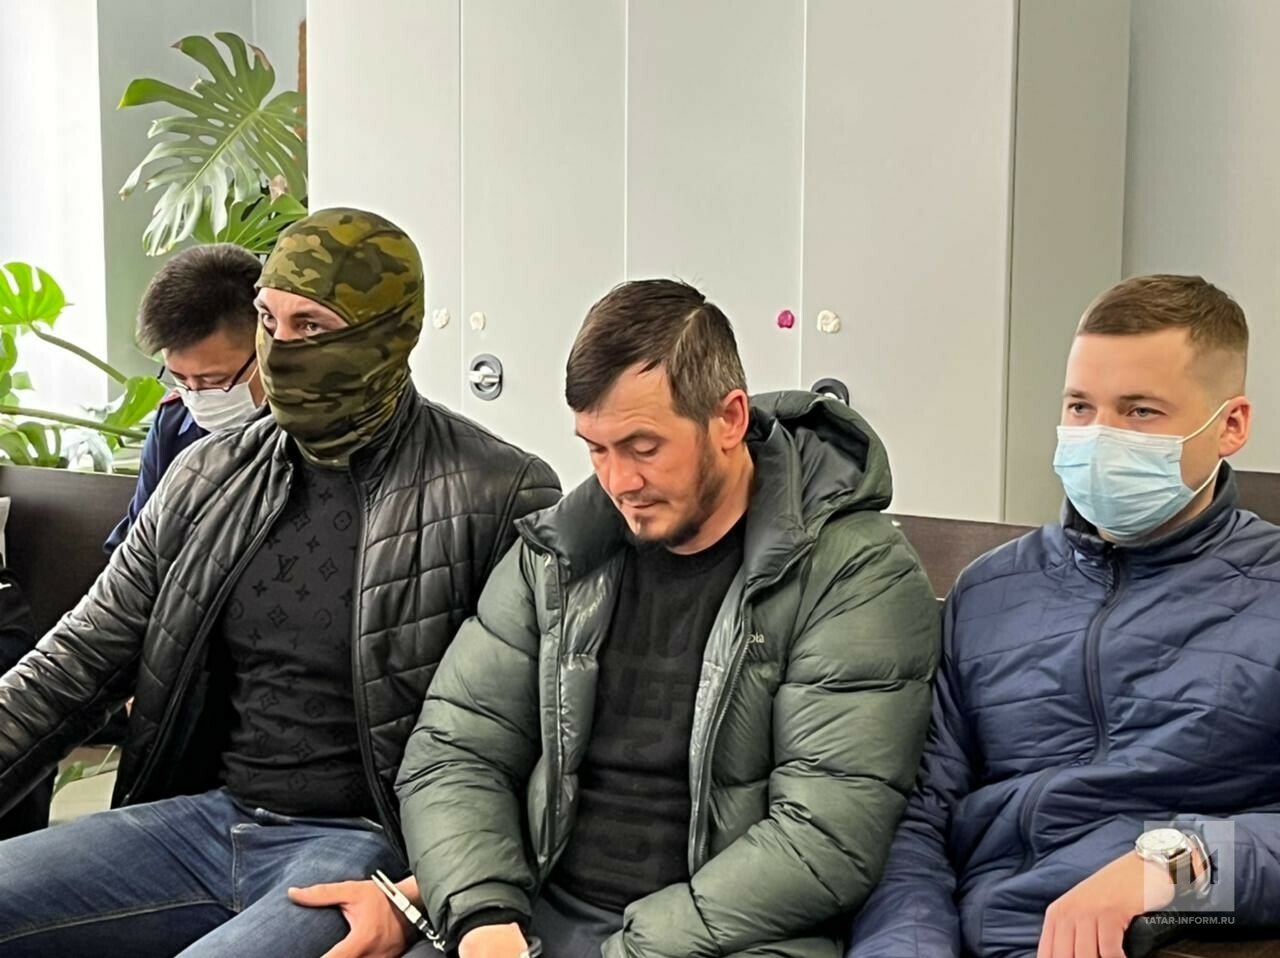 Арестовали первого предполагаемого члена банды Басаева, напавшей на псковских десантников